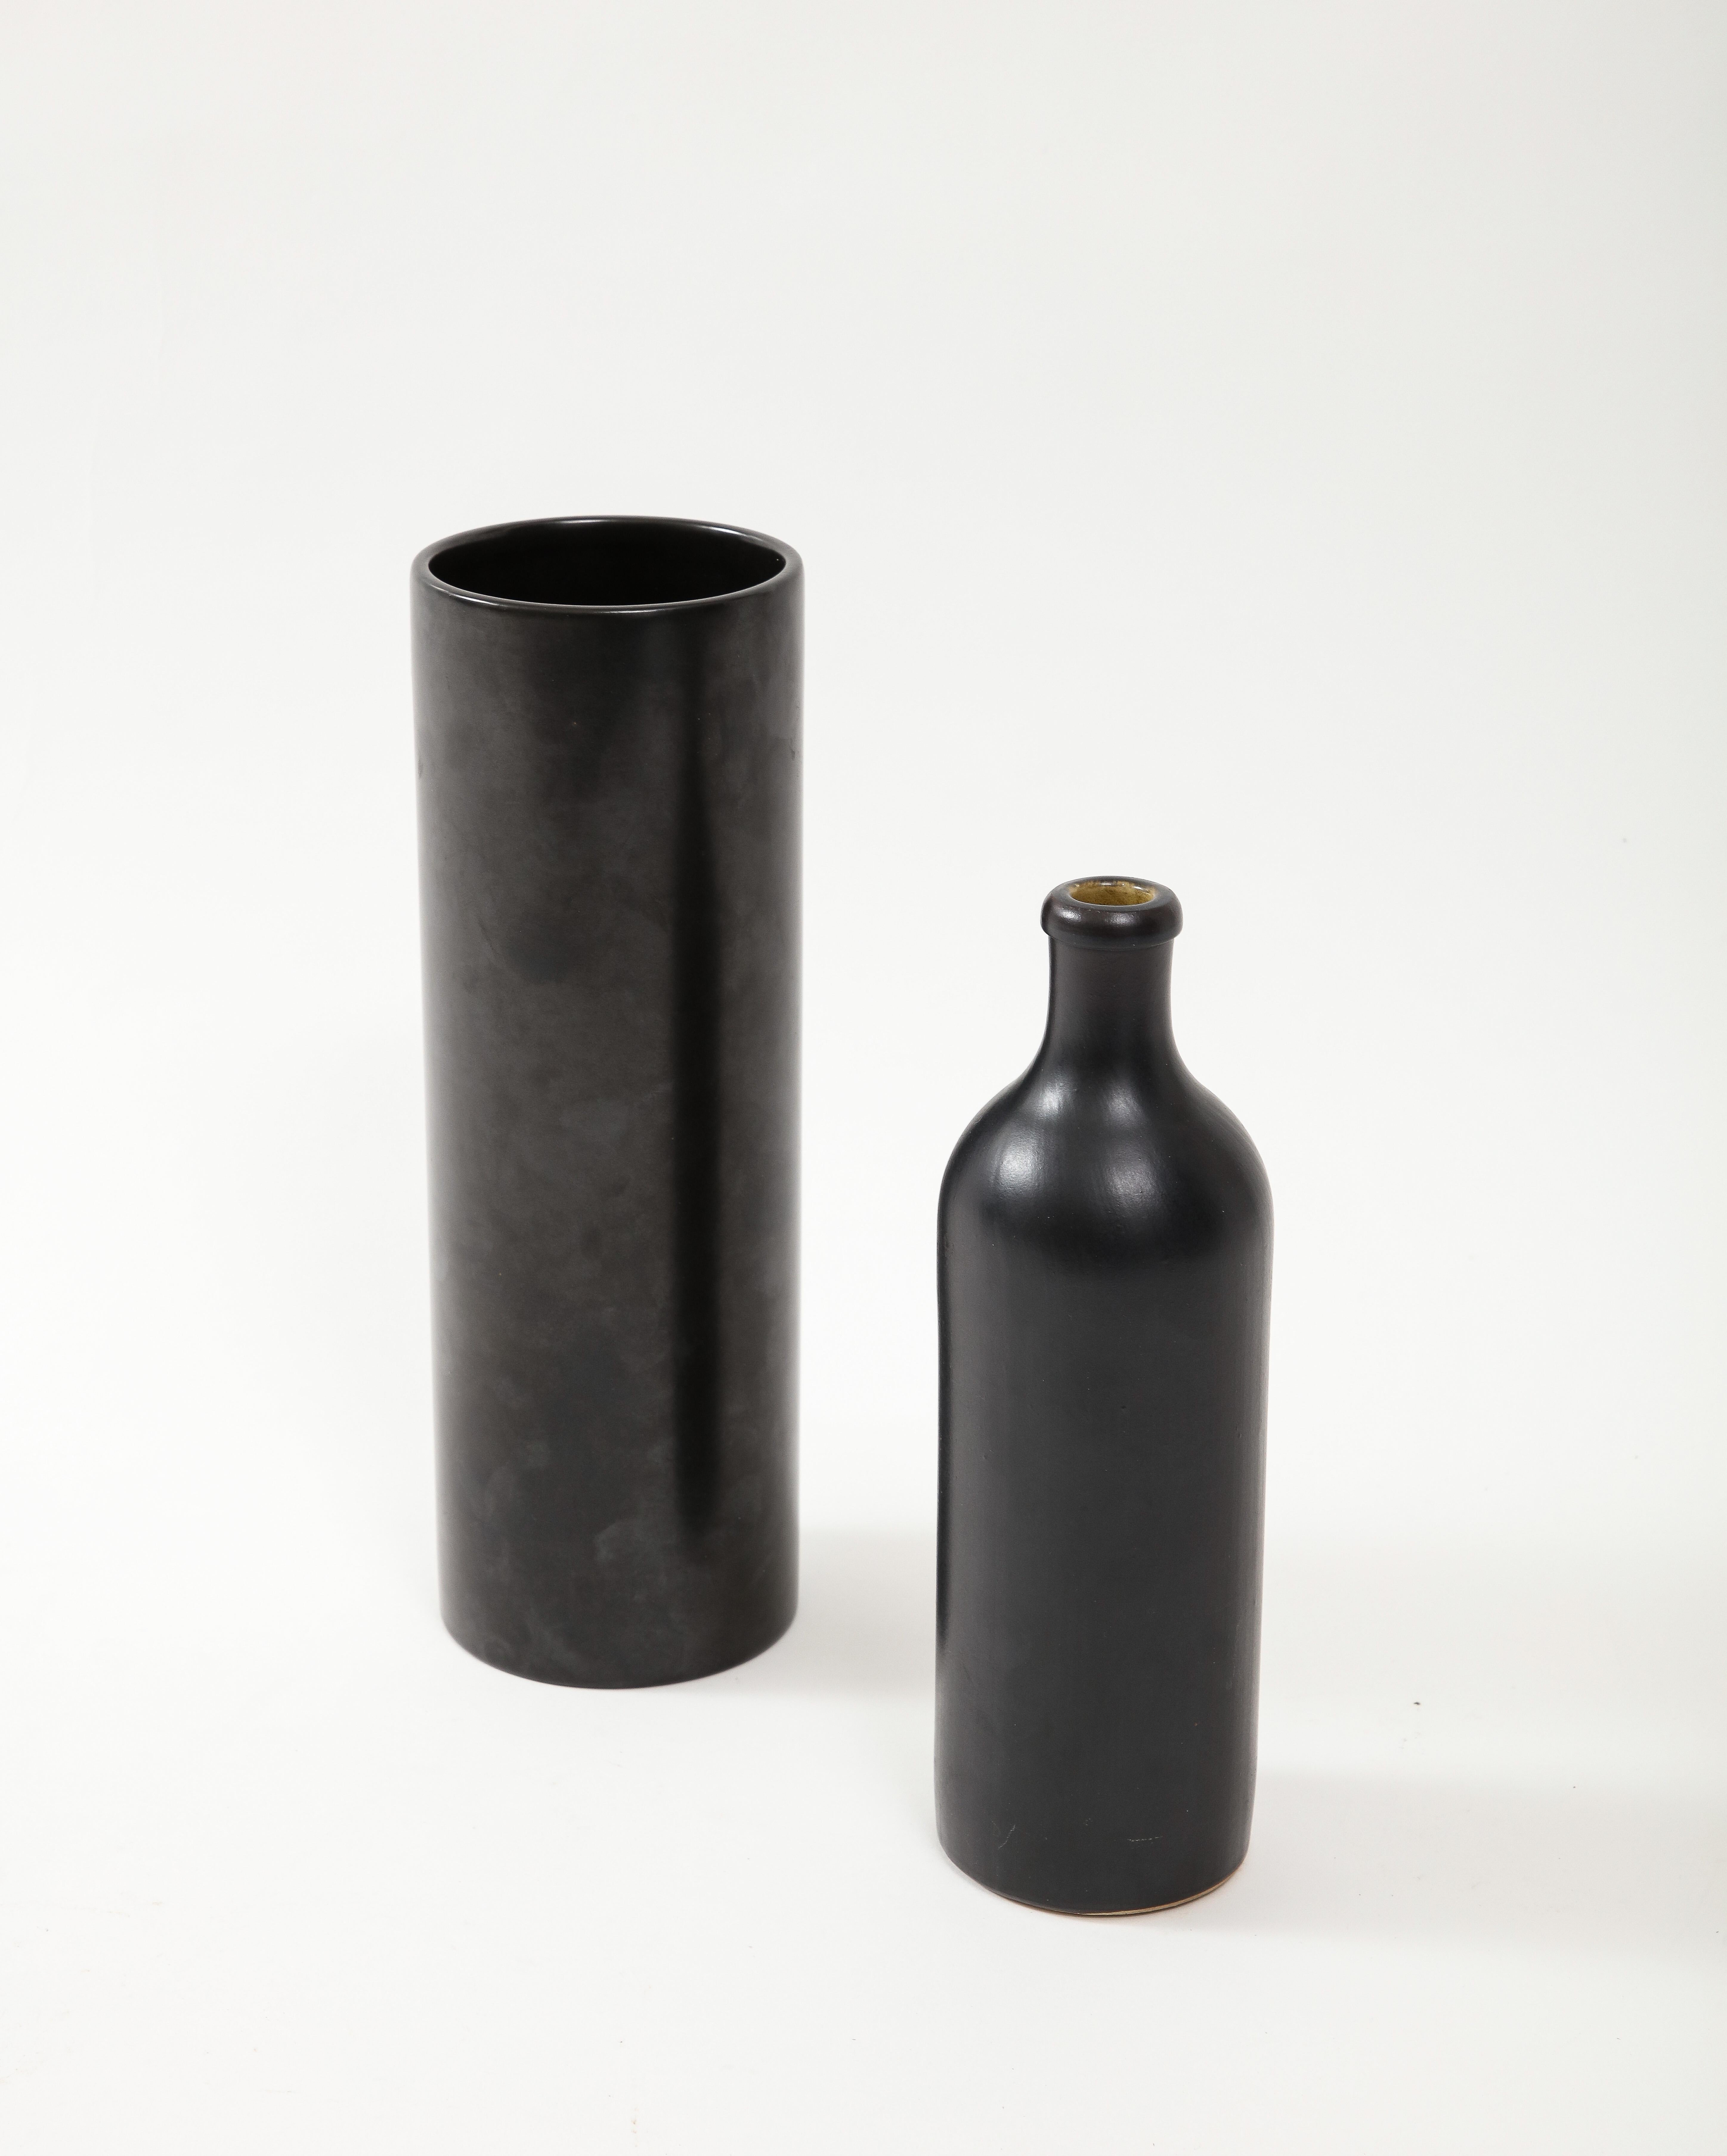 Large Georges Jouve Style Black Matte Cylinder Vase, France, c. 1950's For Sale 3